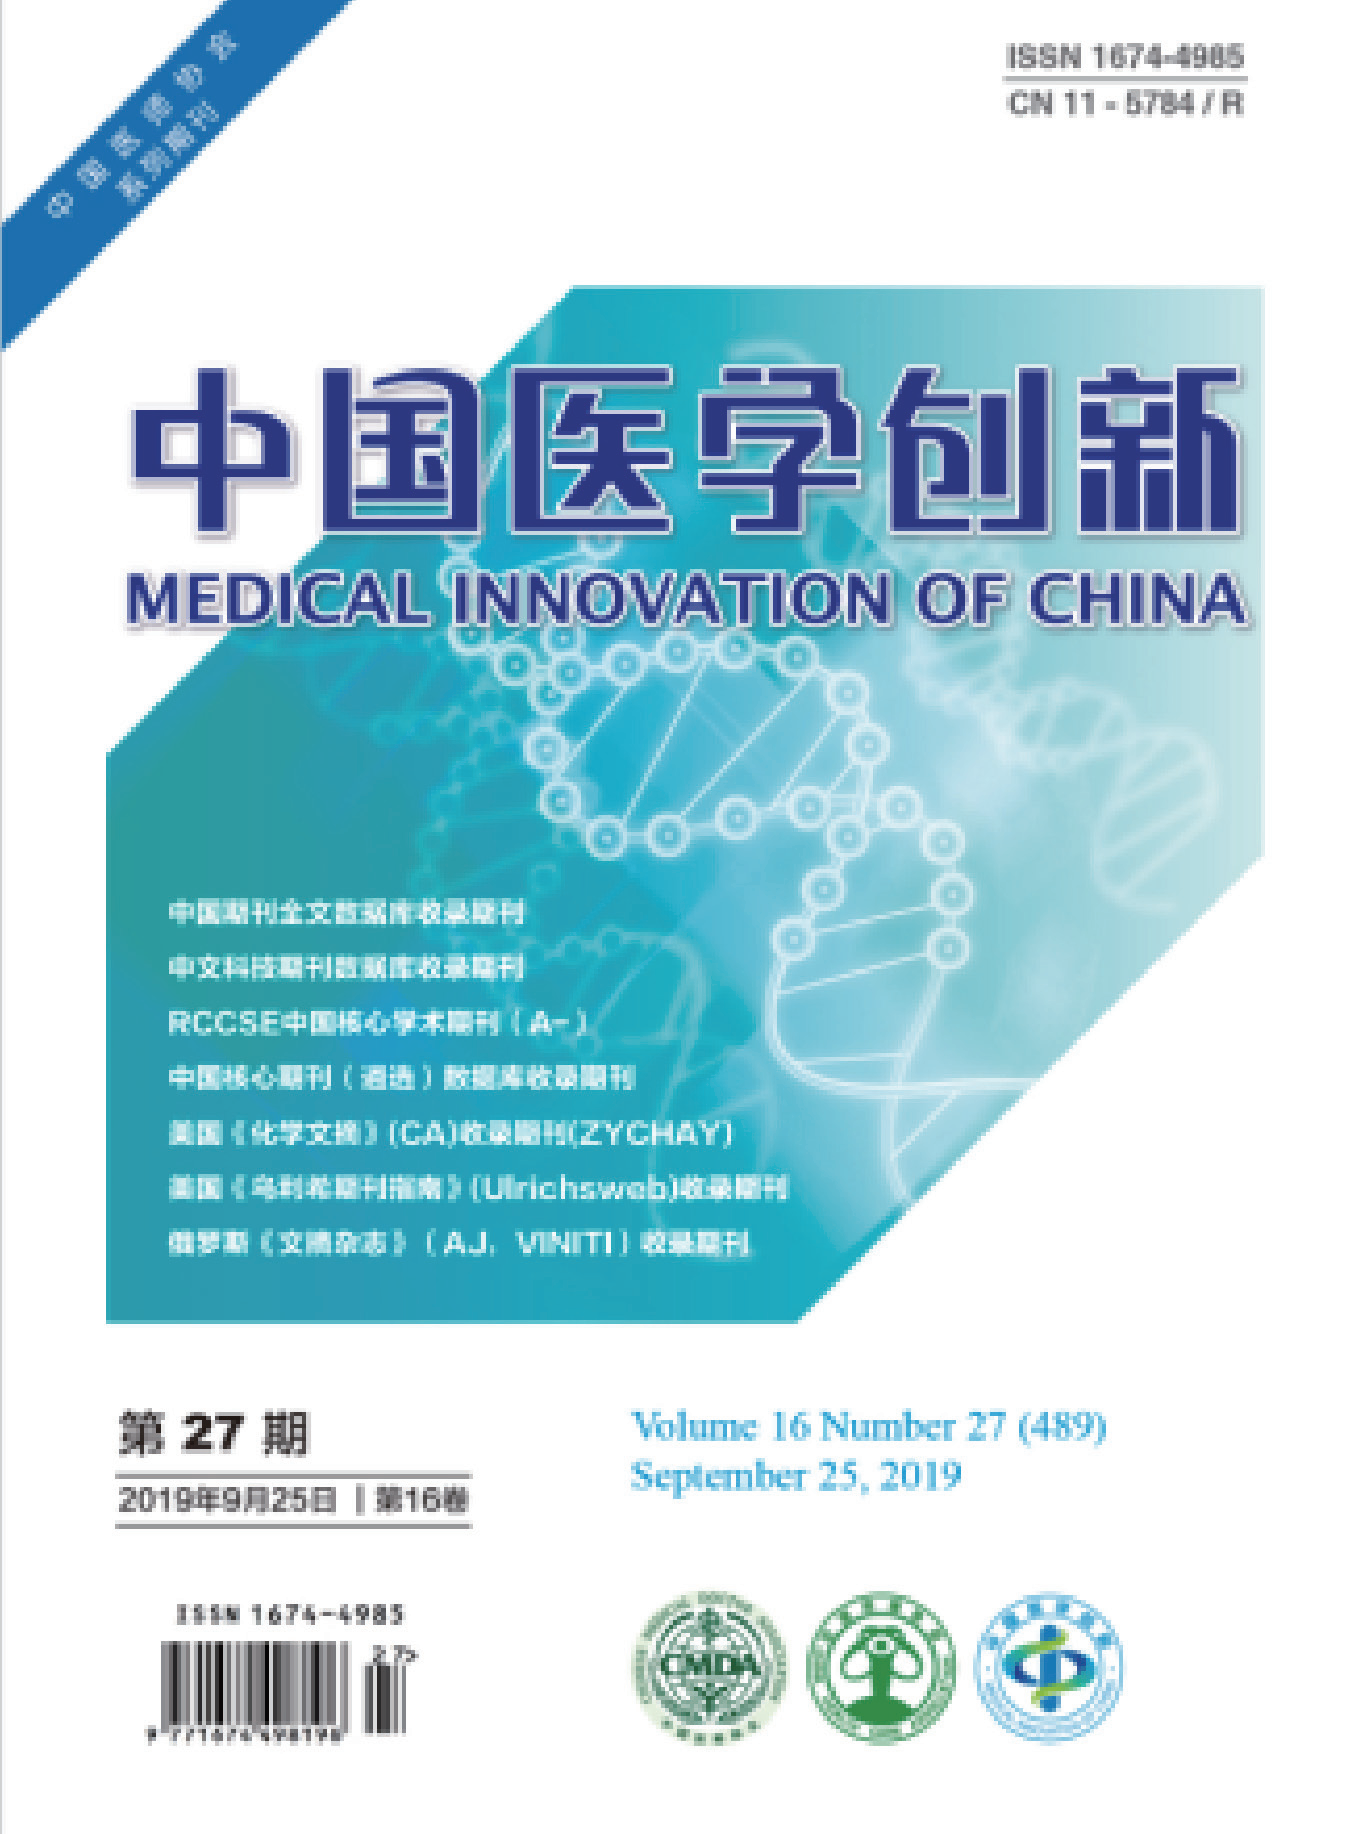 中国医学创新.PNG